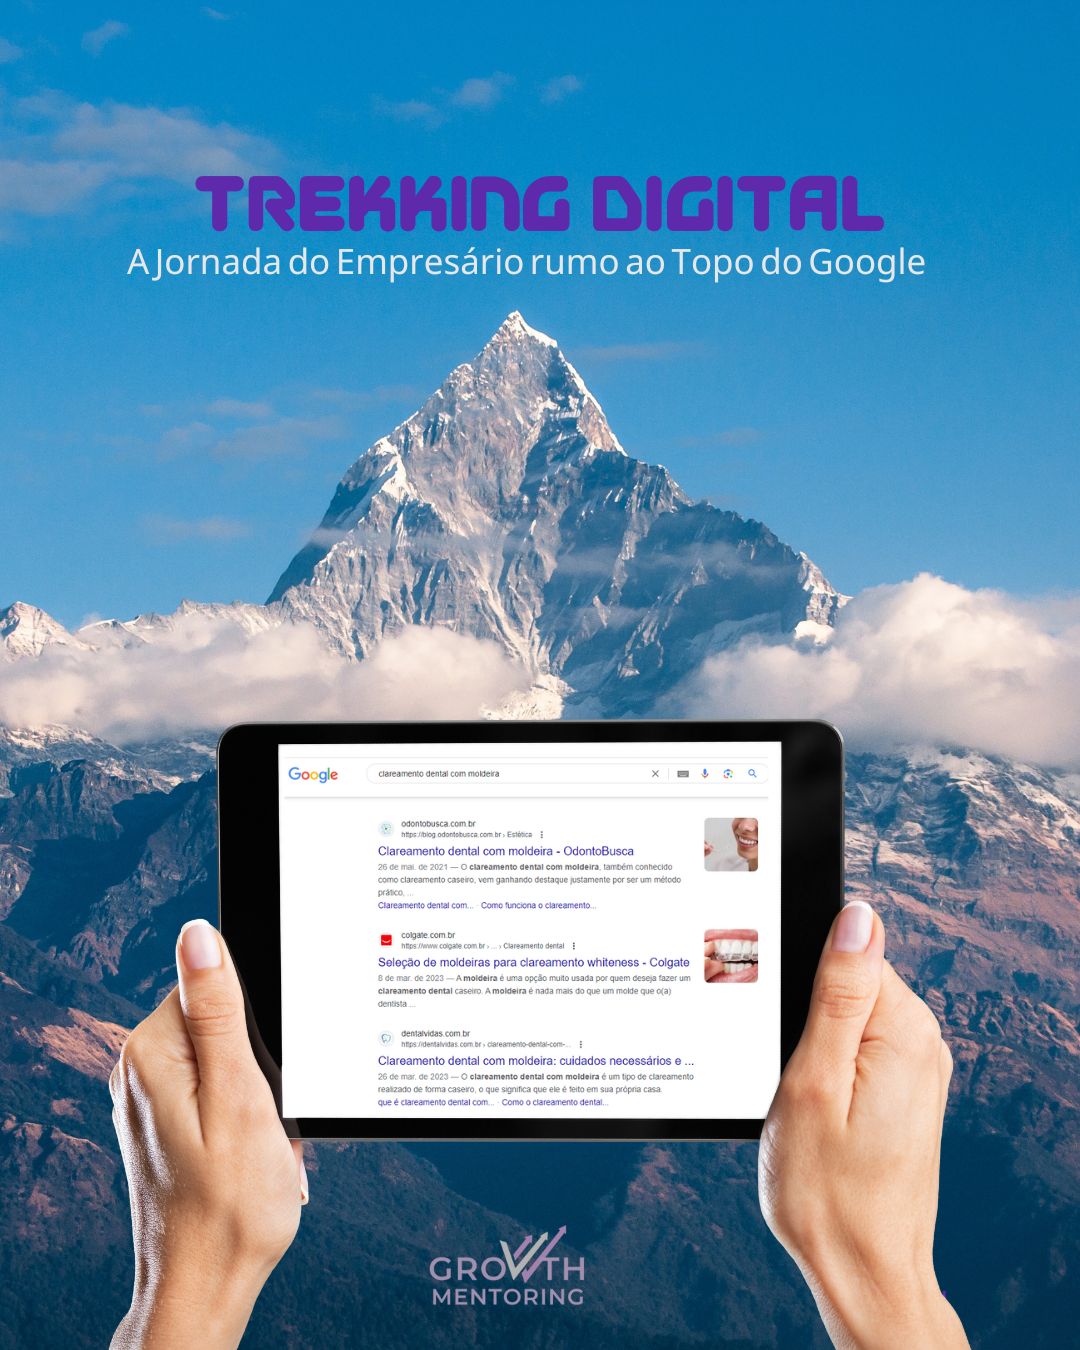 Trekking Digital: A Jornada do Empresário rumo ao Topo do Google